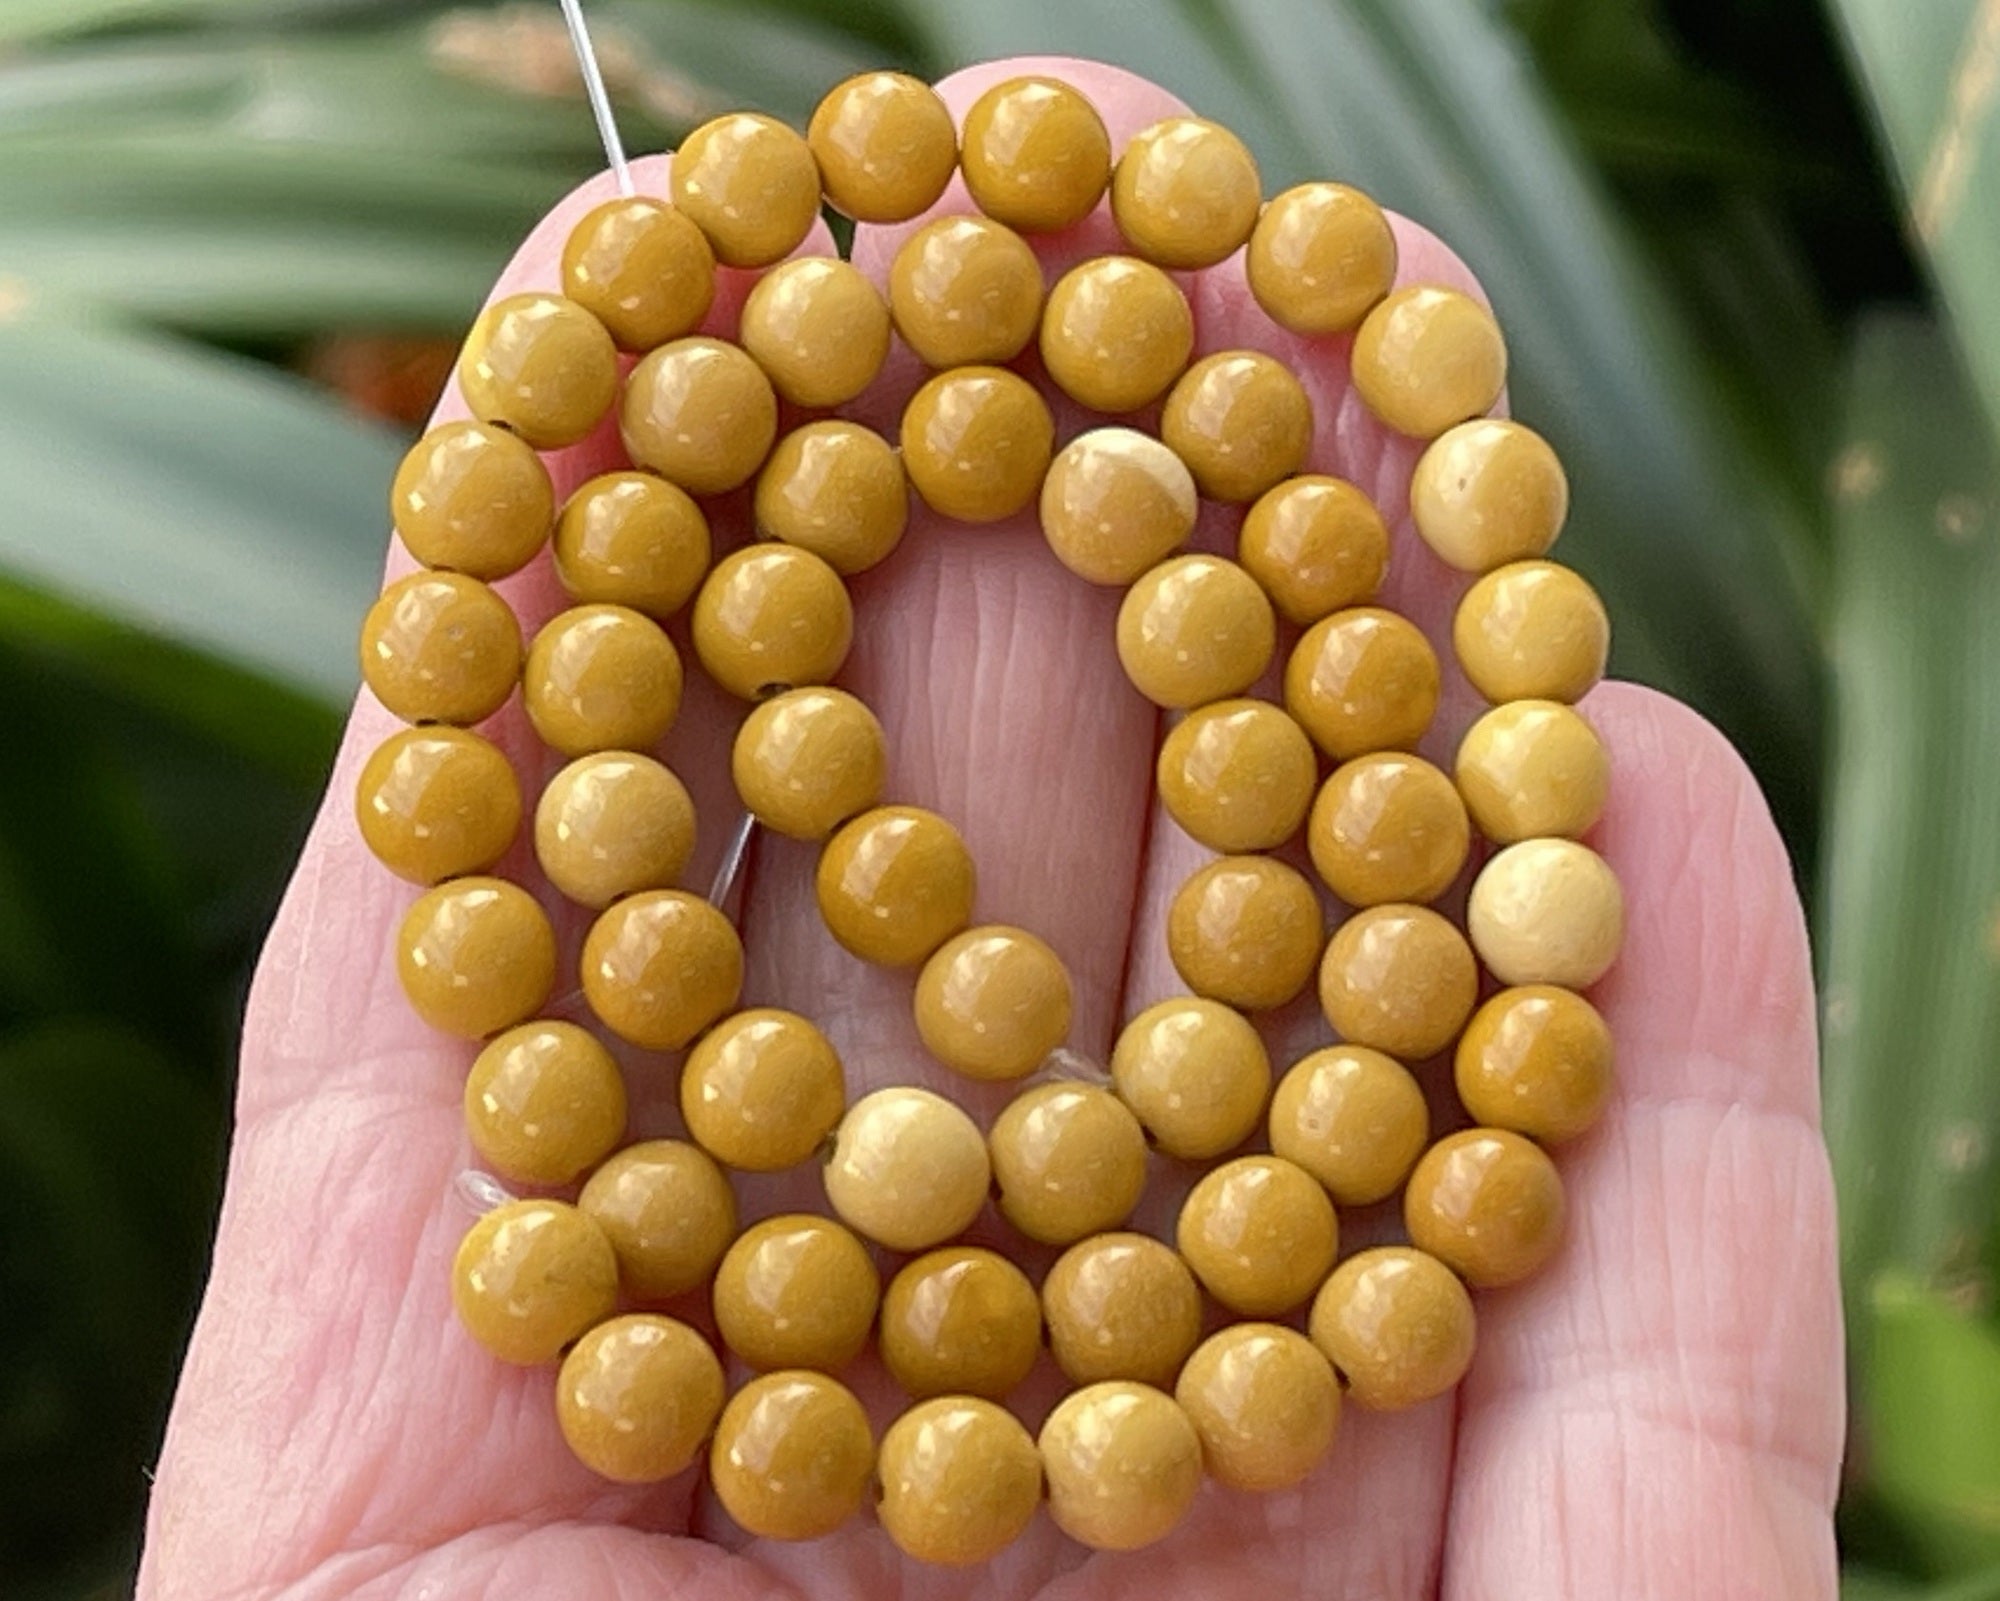 Yellow Mookaite Jasper 6mm round natural gemstone beads 15" strand - Oz Beads 